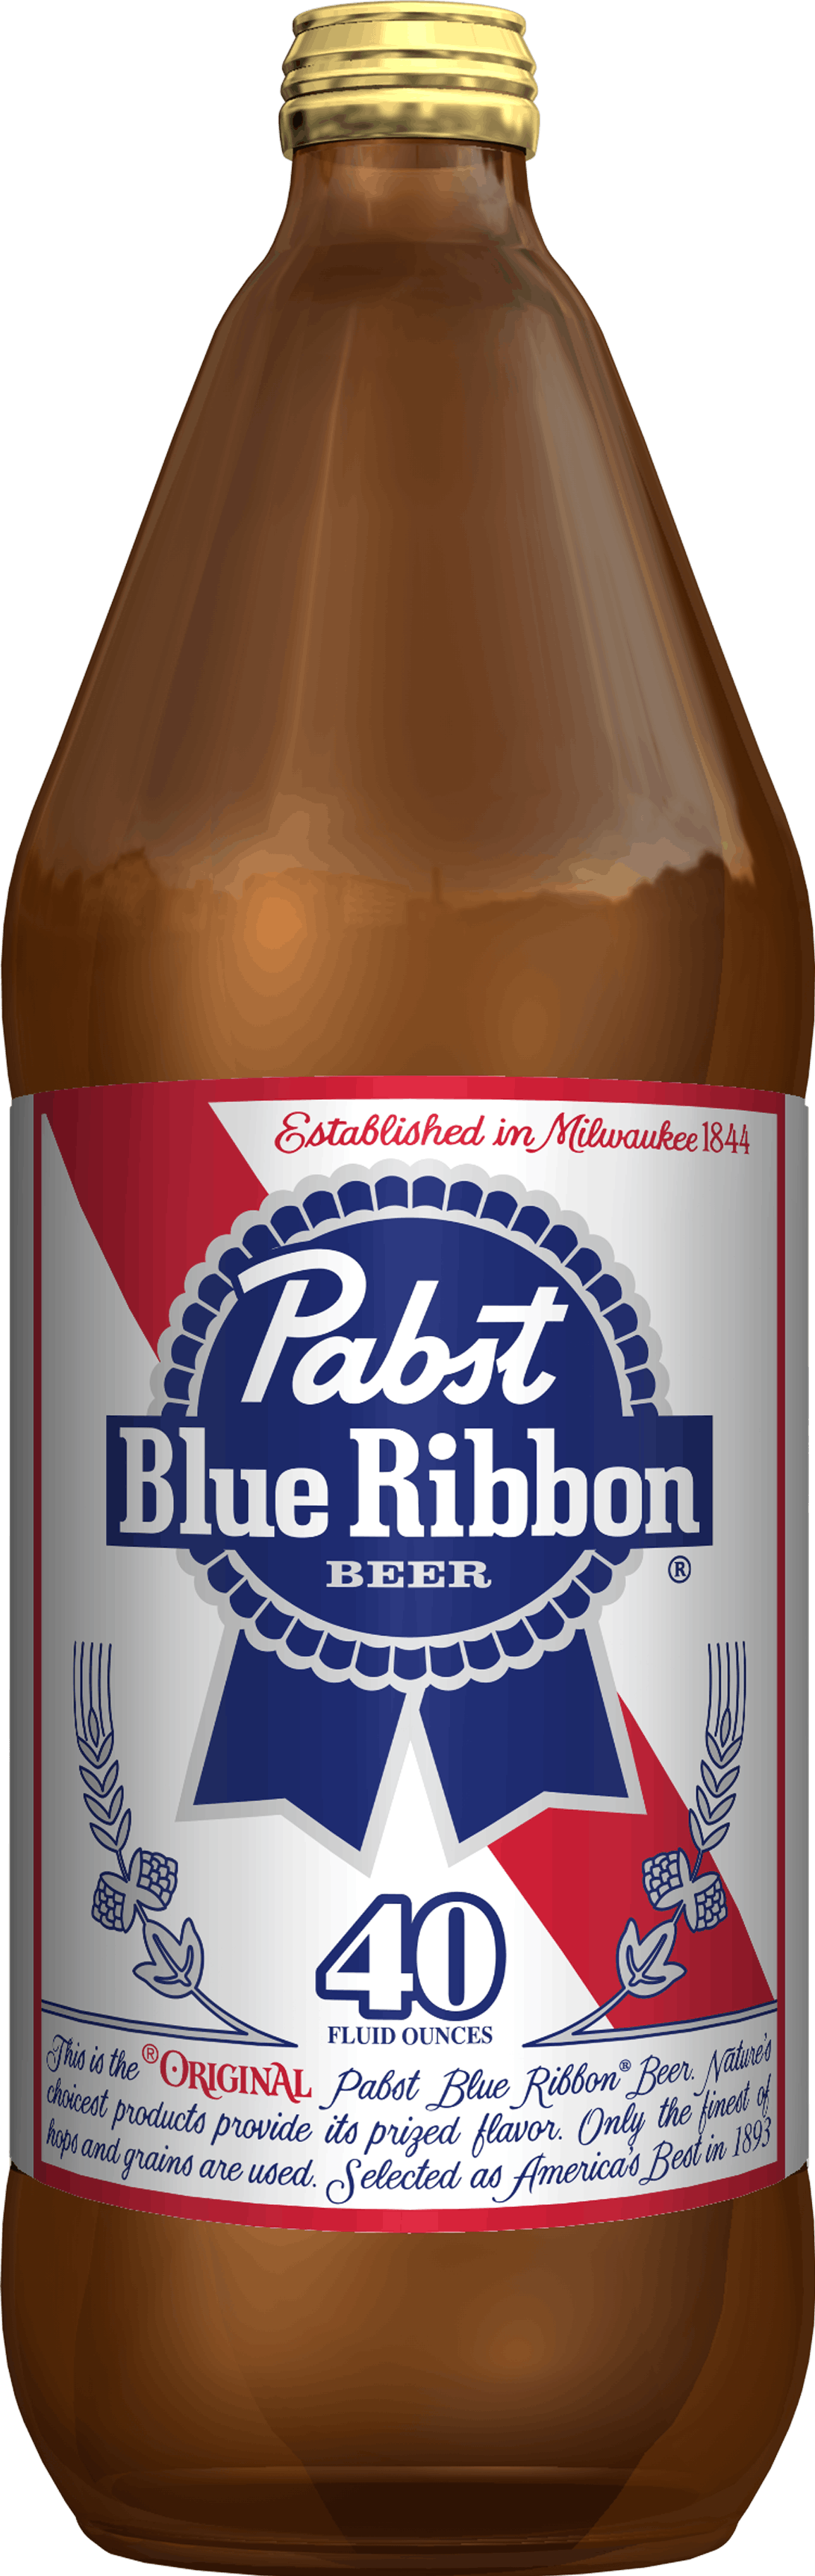 Pabst Blue Ribbon Beer, 24 pack, 12 fl oz bottles